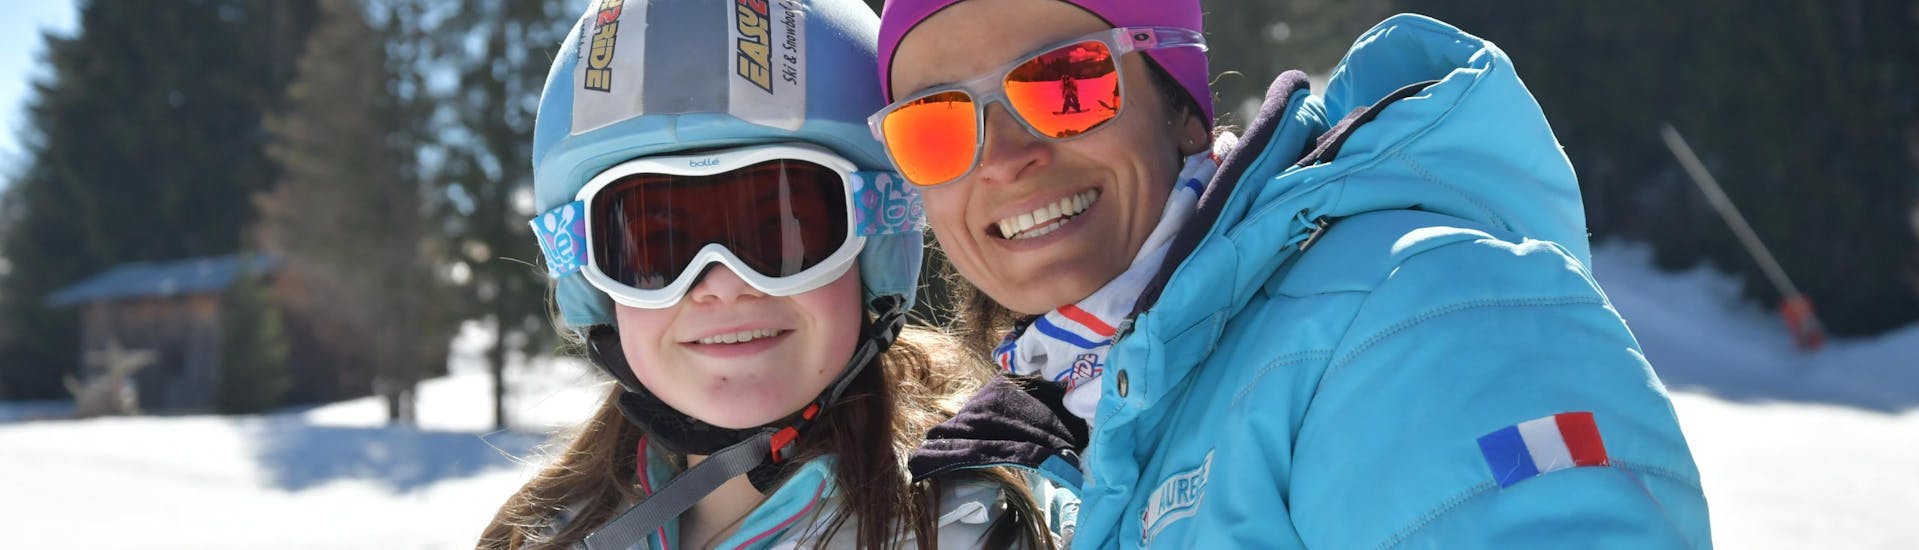 Privater Skikurs für Kinder und Jugendliche (ab 5 Jahren) für alle Levels.